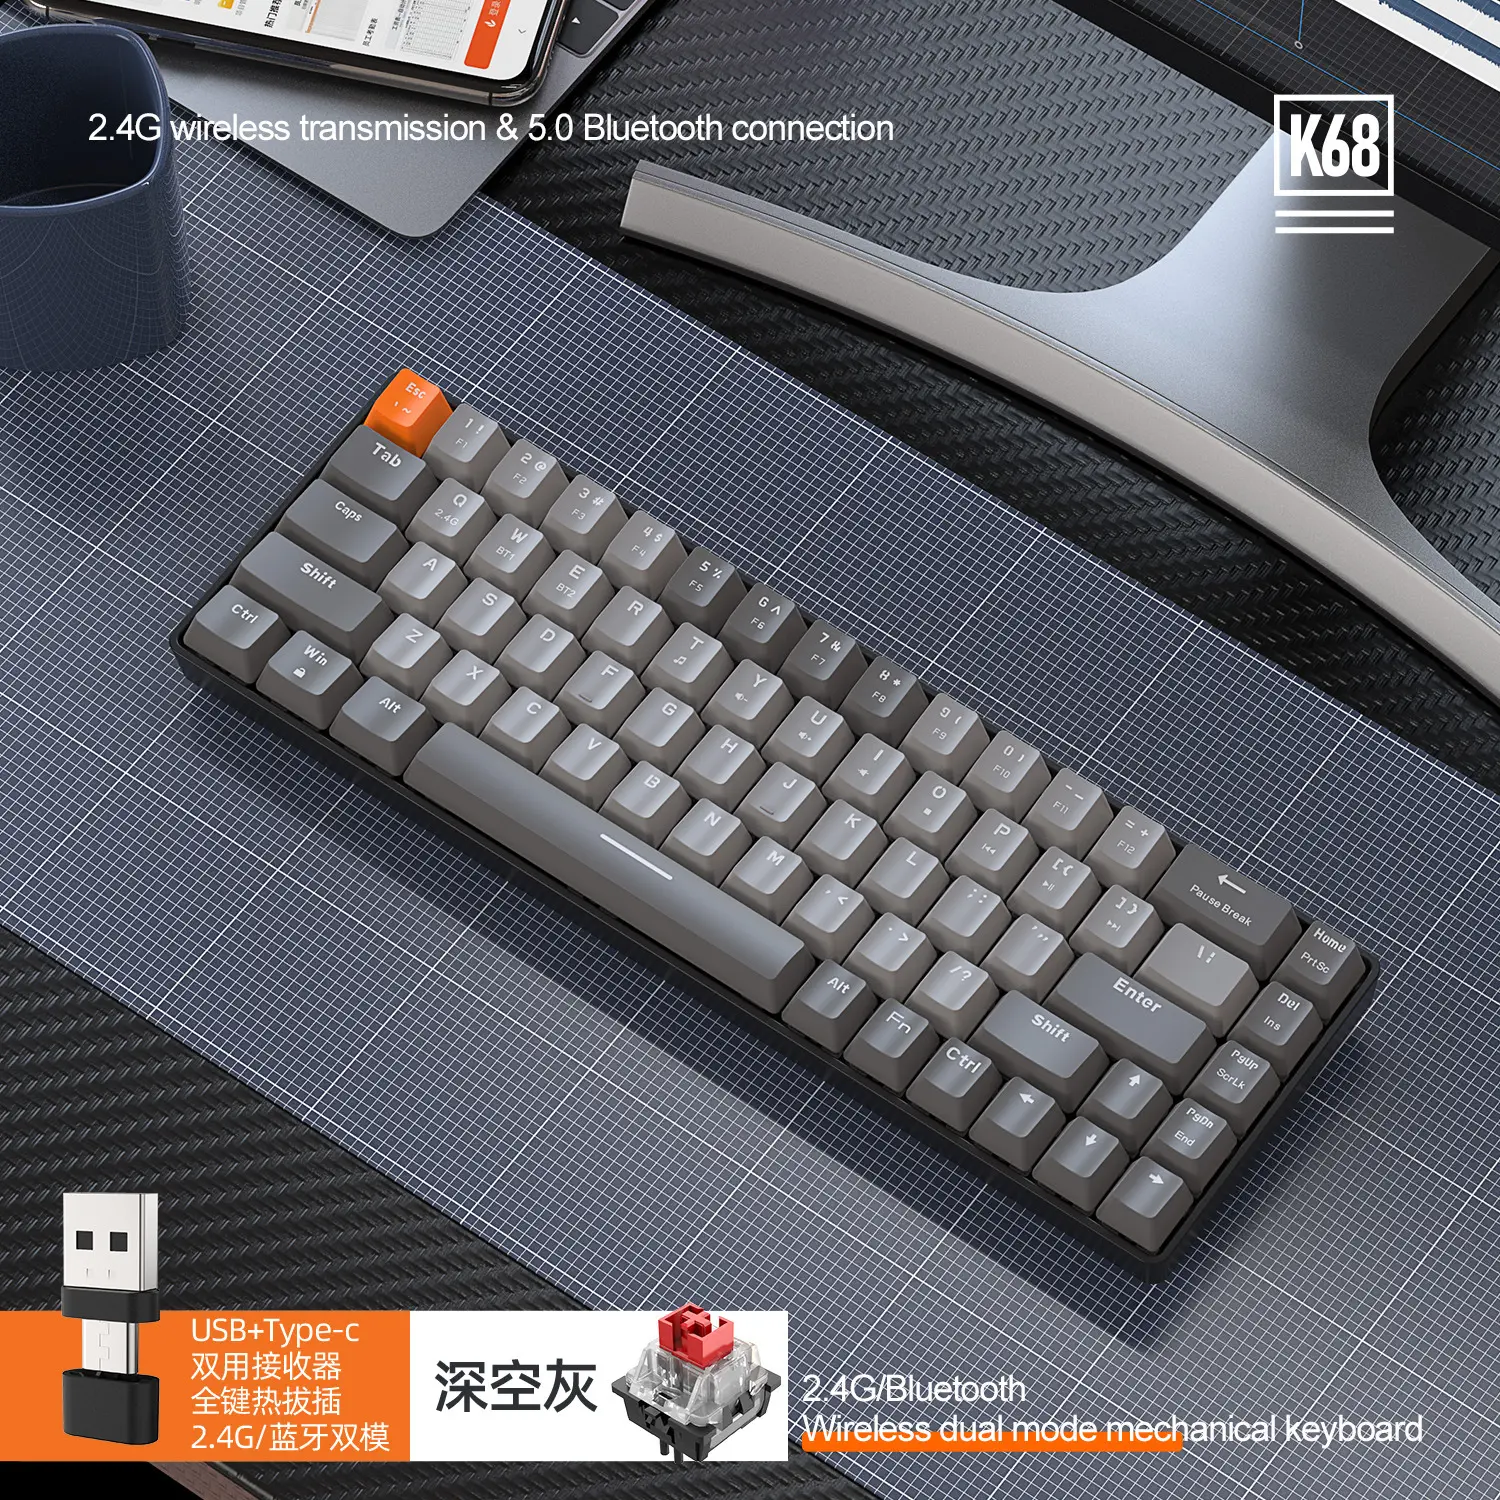 لوحة مفاتيح k68 لاسلكية ميكانيكية تايلاندية لاسلكية 60% 75% 80% مجموعة لوحة مفاتيح ميكانيكية لاسلكية لوحة مفاتيح ميكانيكية للألعاب